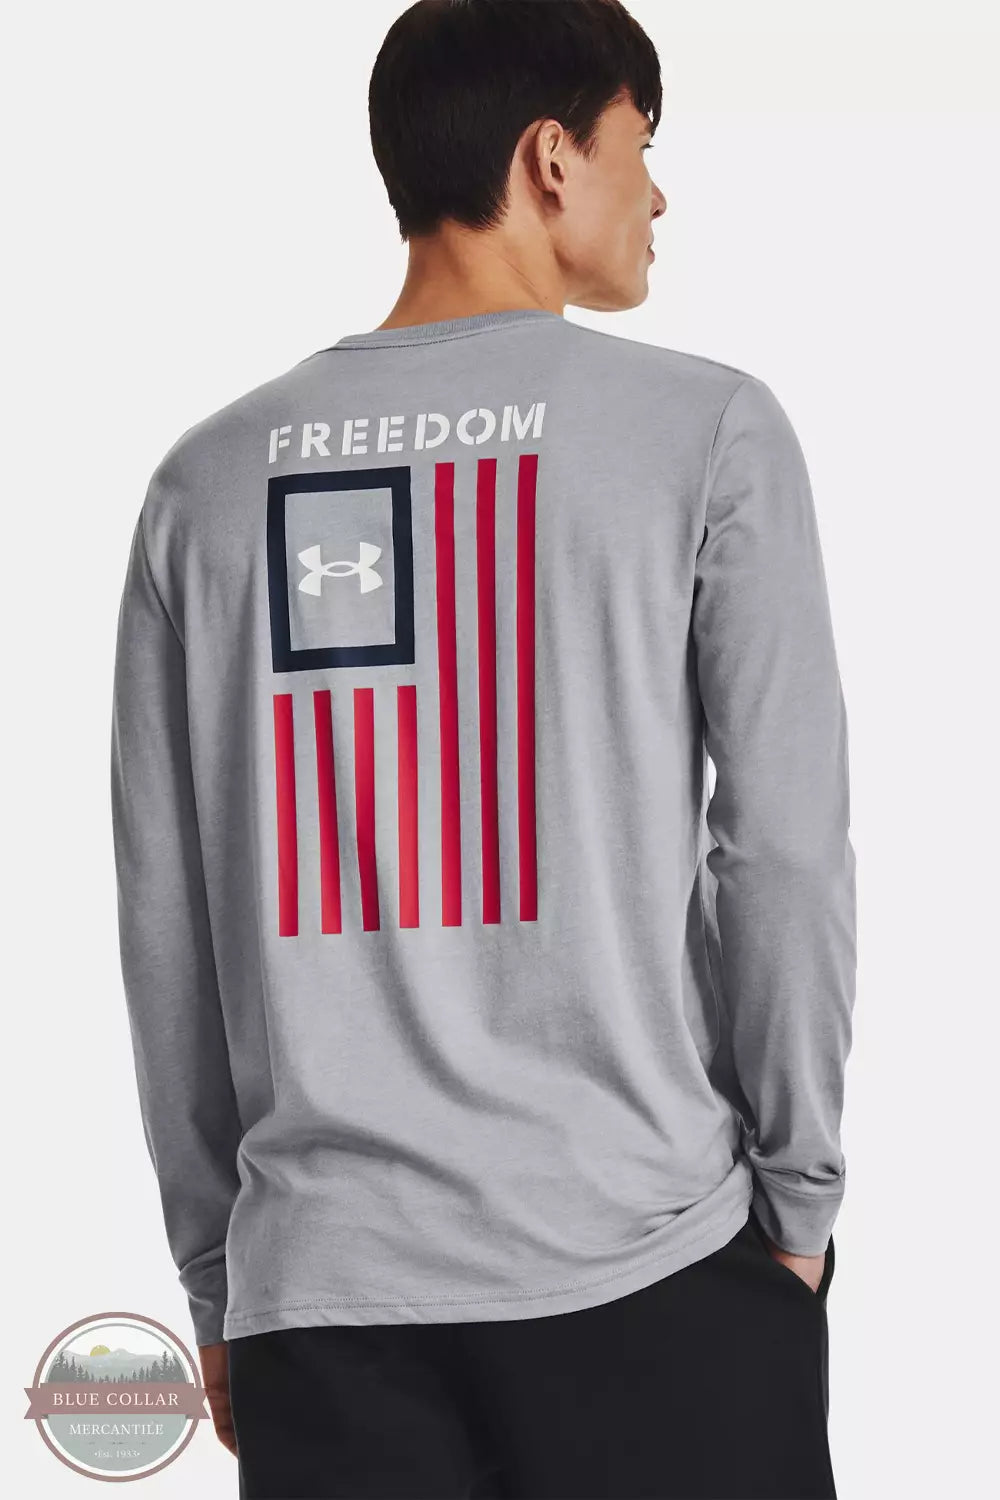 Under Armour 1370813 Freedom Flag Long Sleeve T-Shirt